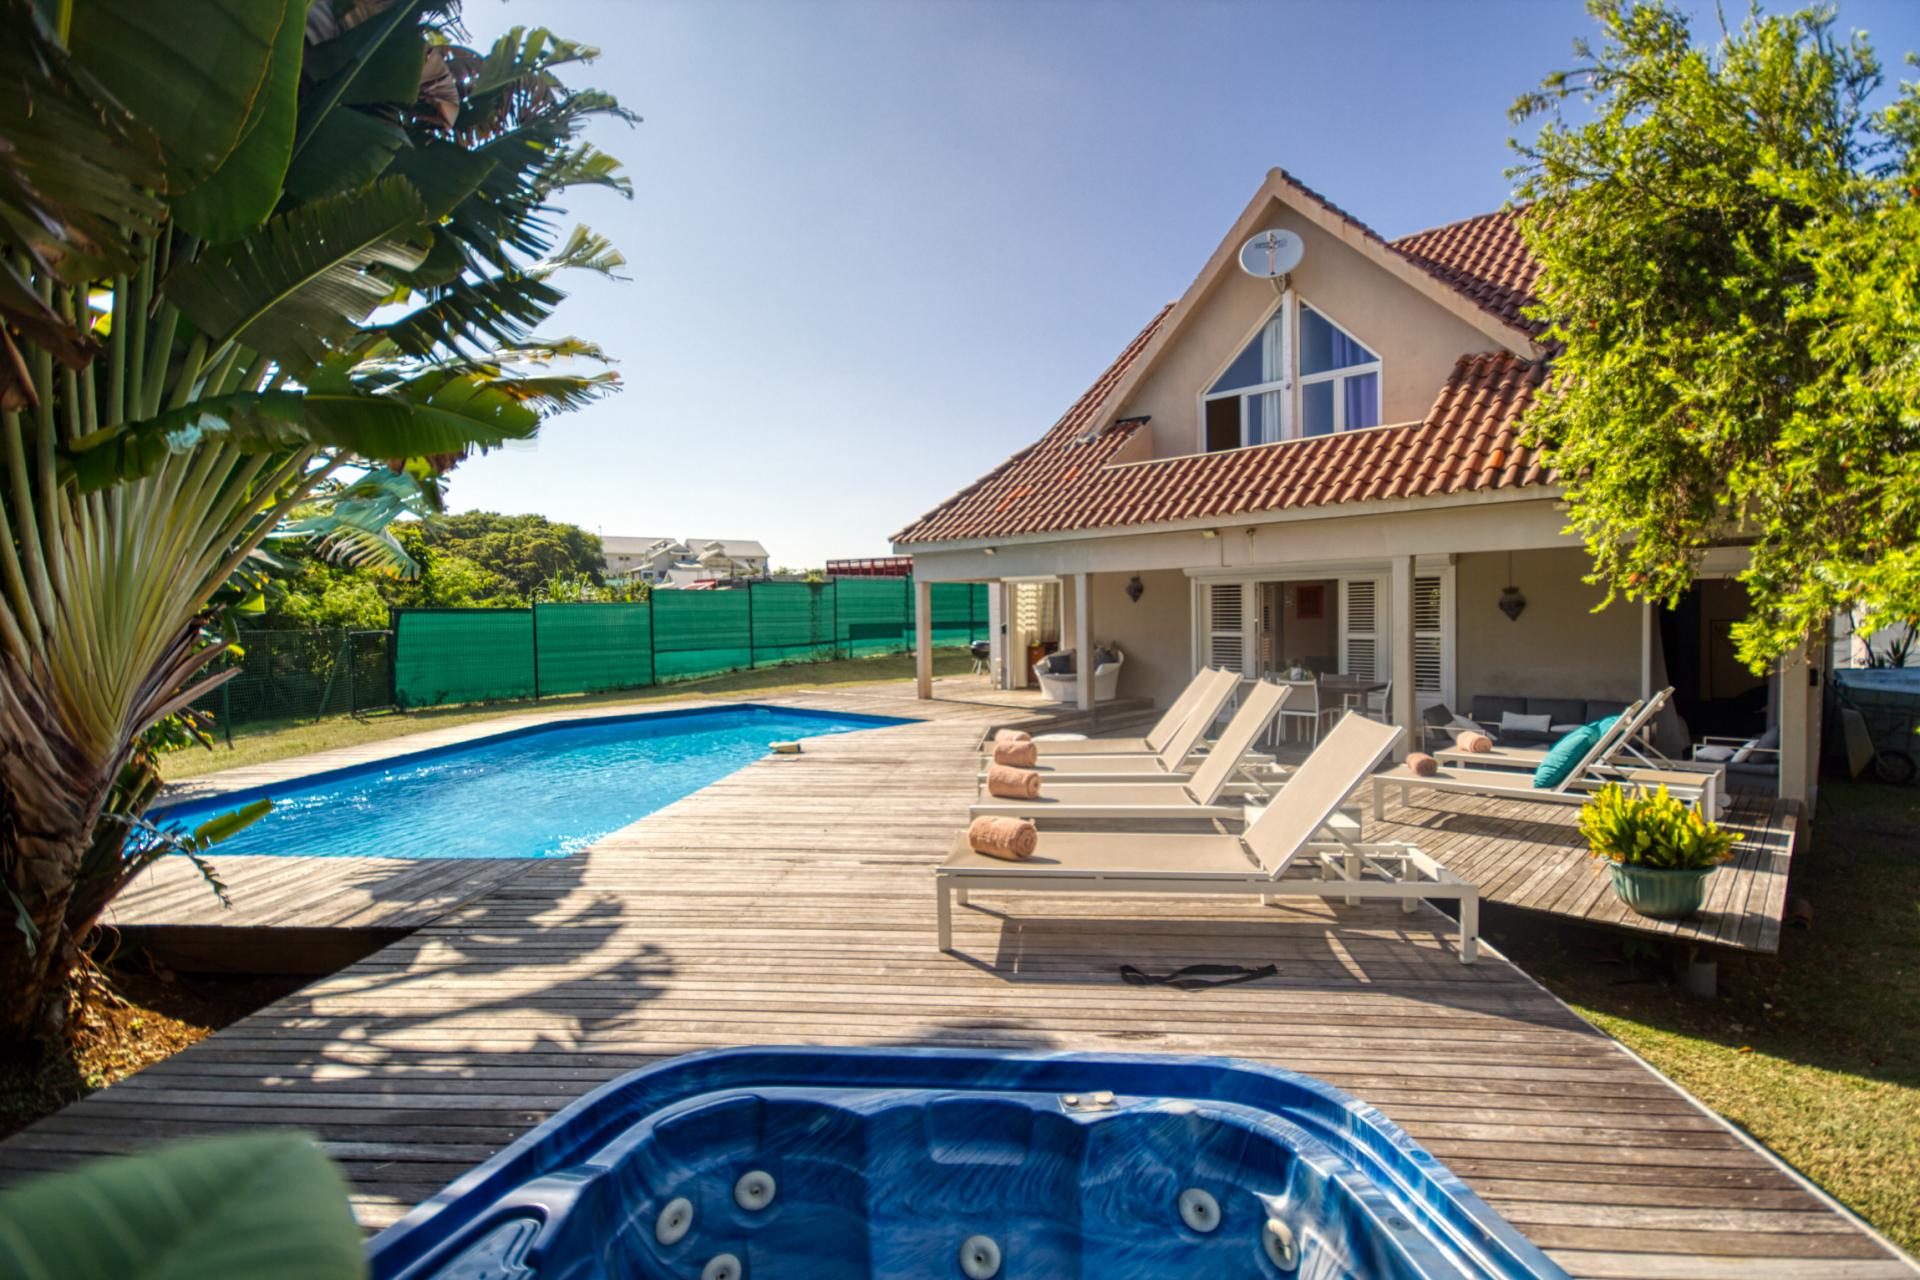 Location villa Guadeloupe Le Gosier 4 chambres 11 personnes vue et accés mer et piscine 